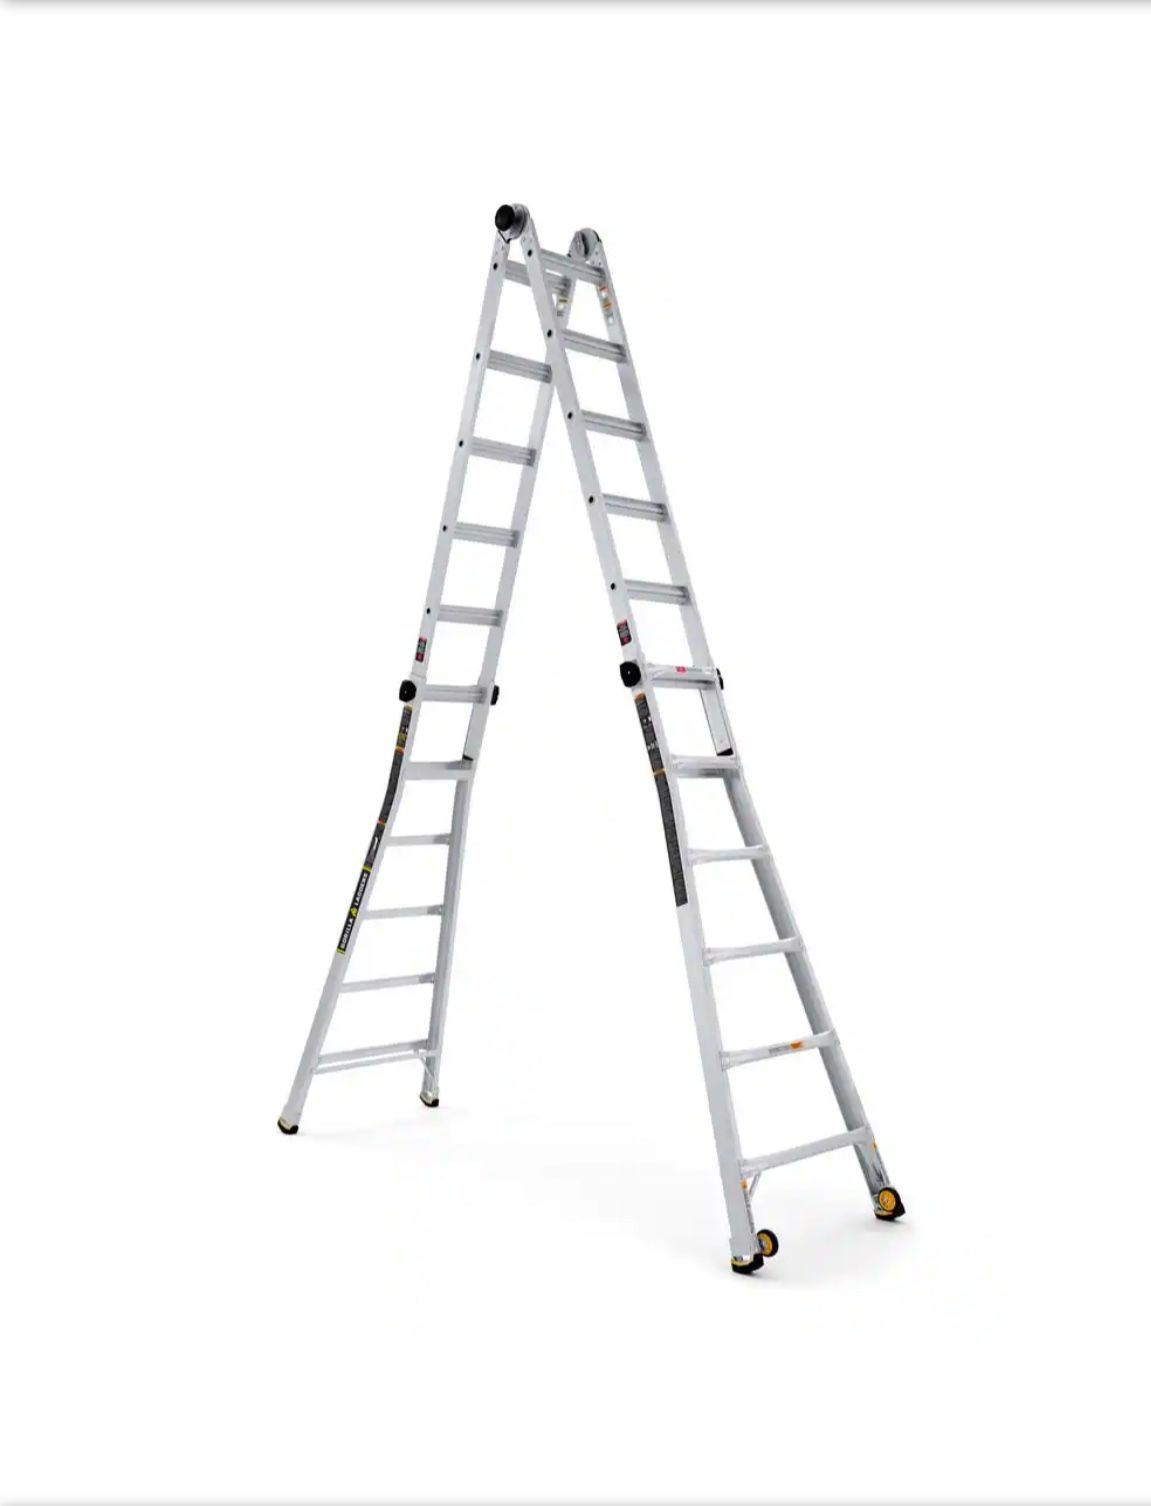 Gorilla 24ft Multi-position Ladder 